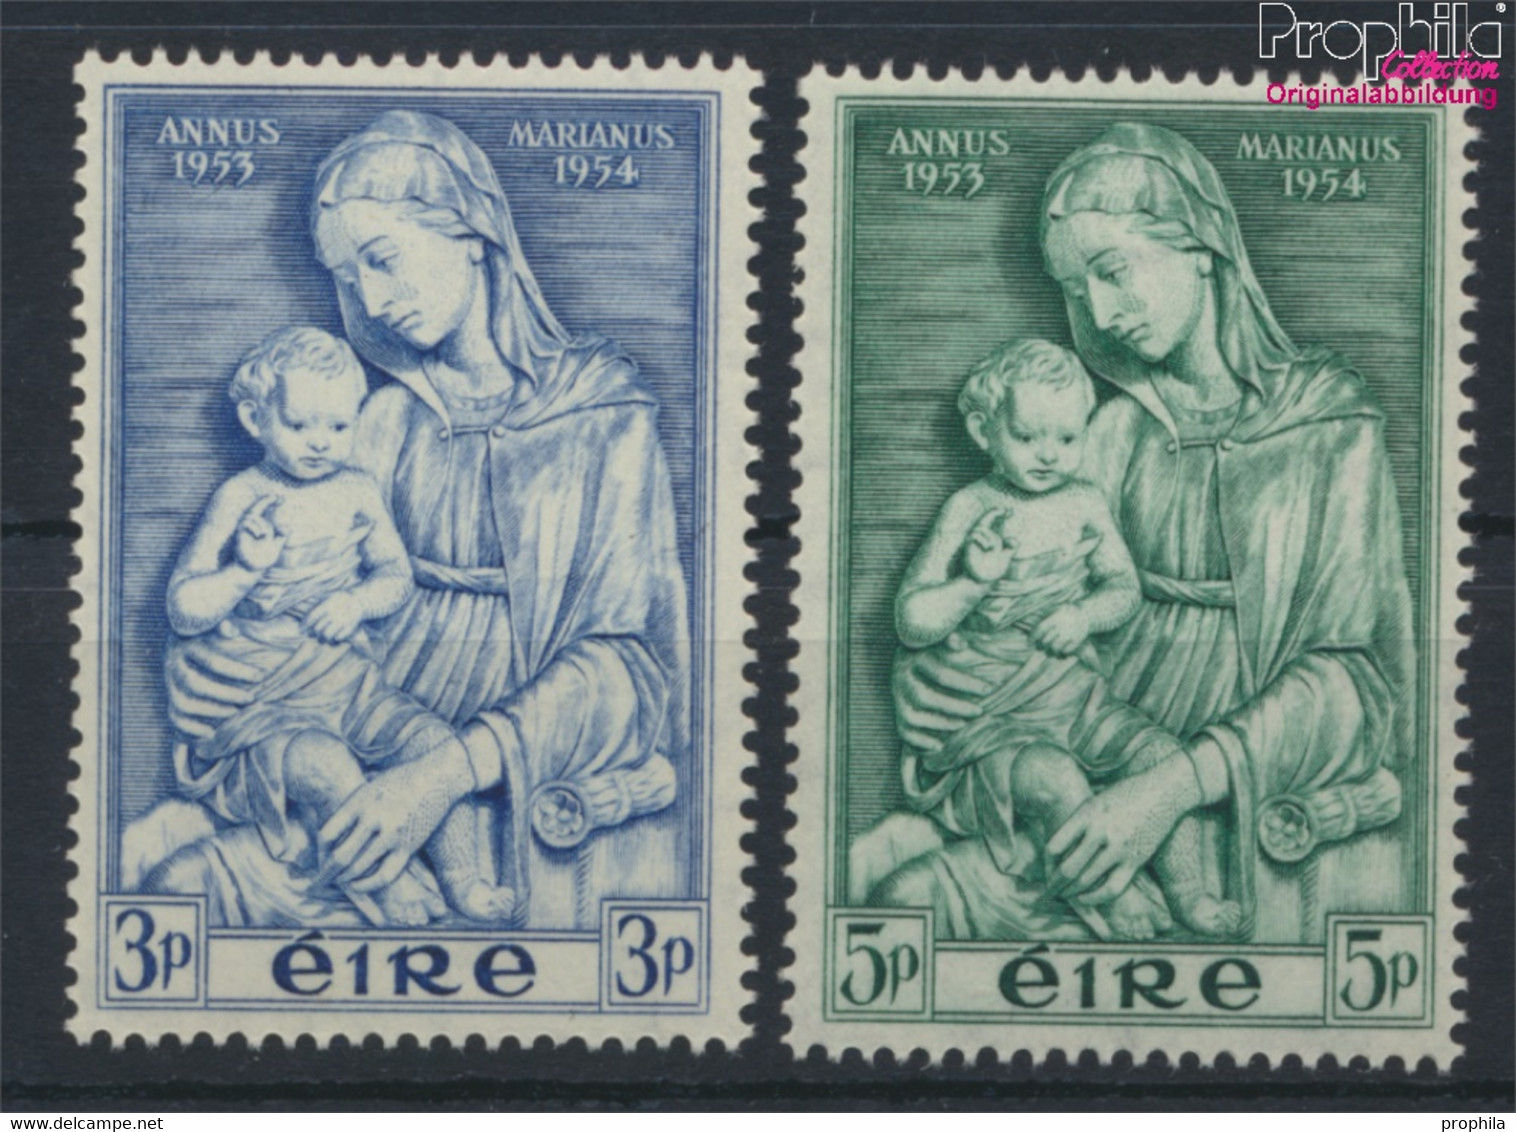 Irland 120-121 (kompl.Ausg.) Postfrisch 1954 Marianisches Jahr (9931204 - Neufs